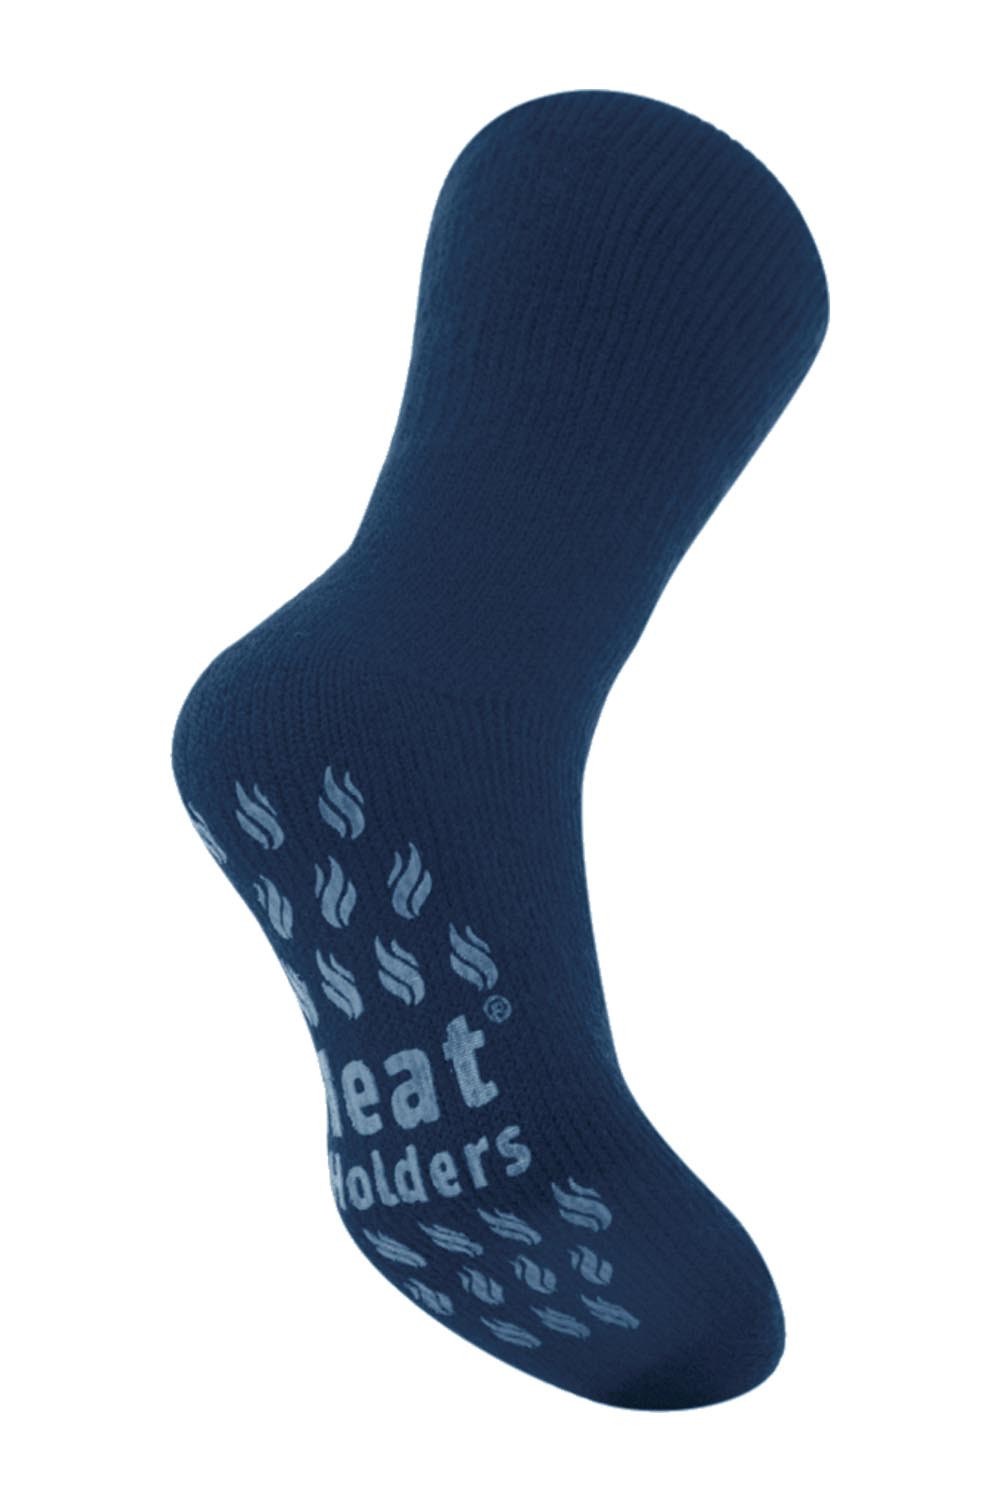 Mens Original Kolax Ankle Slipper Socks - Navy & Denim, Heat Holders